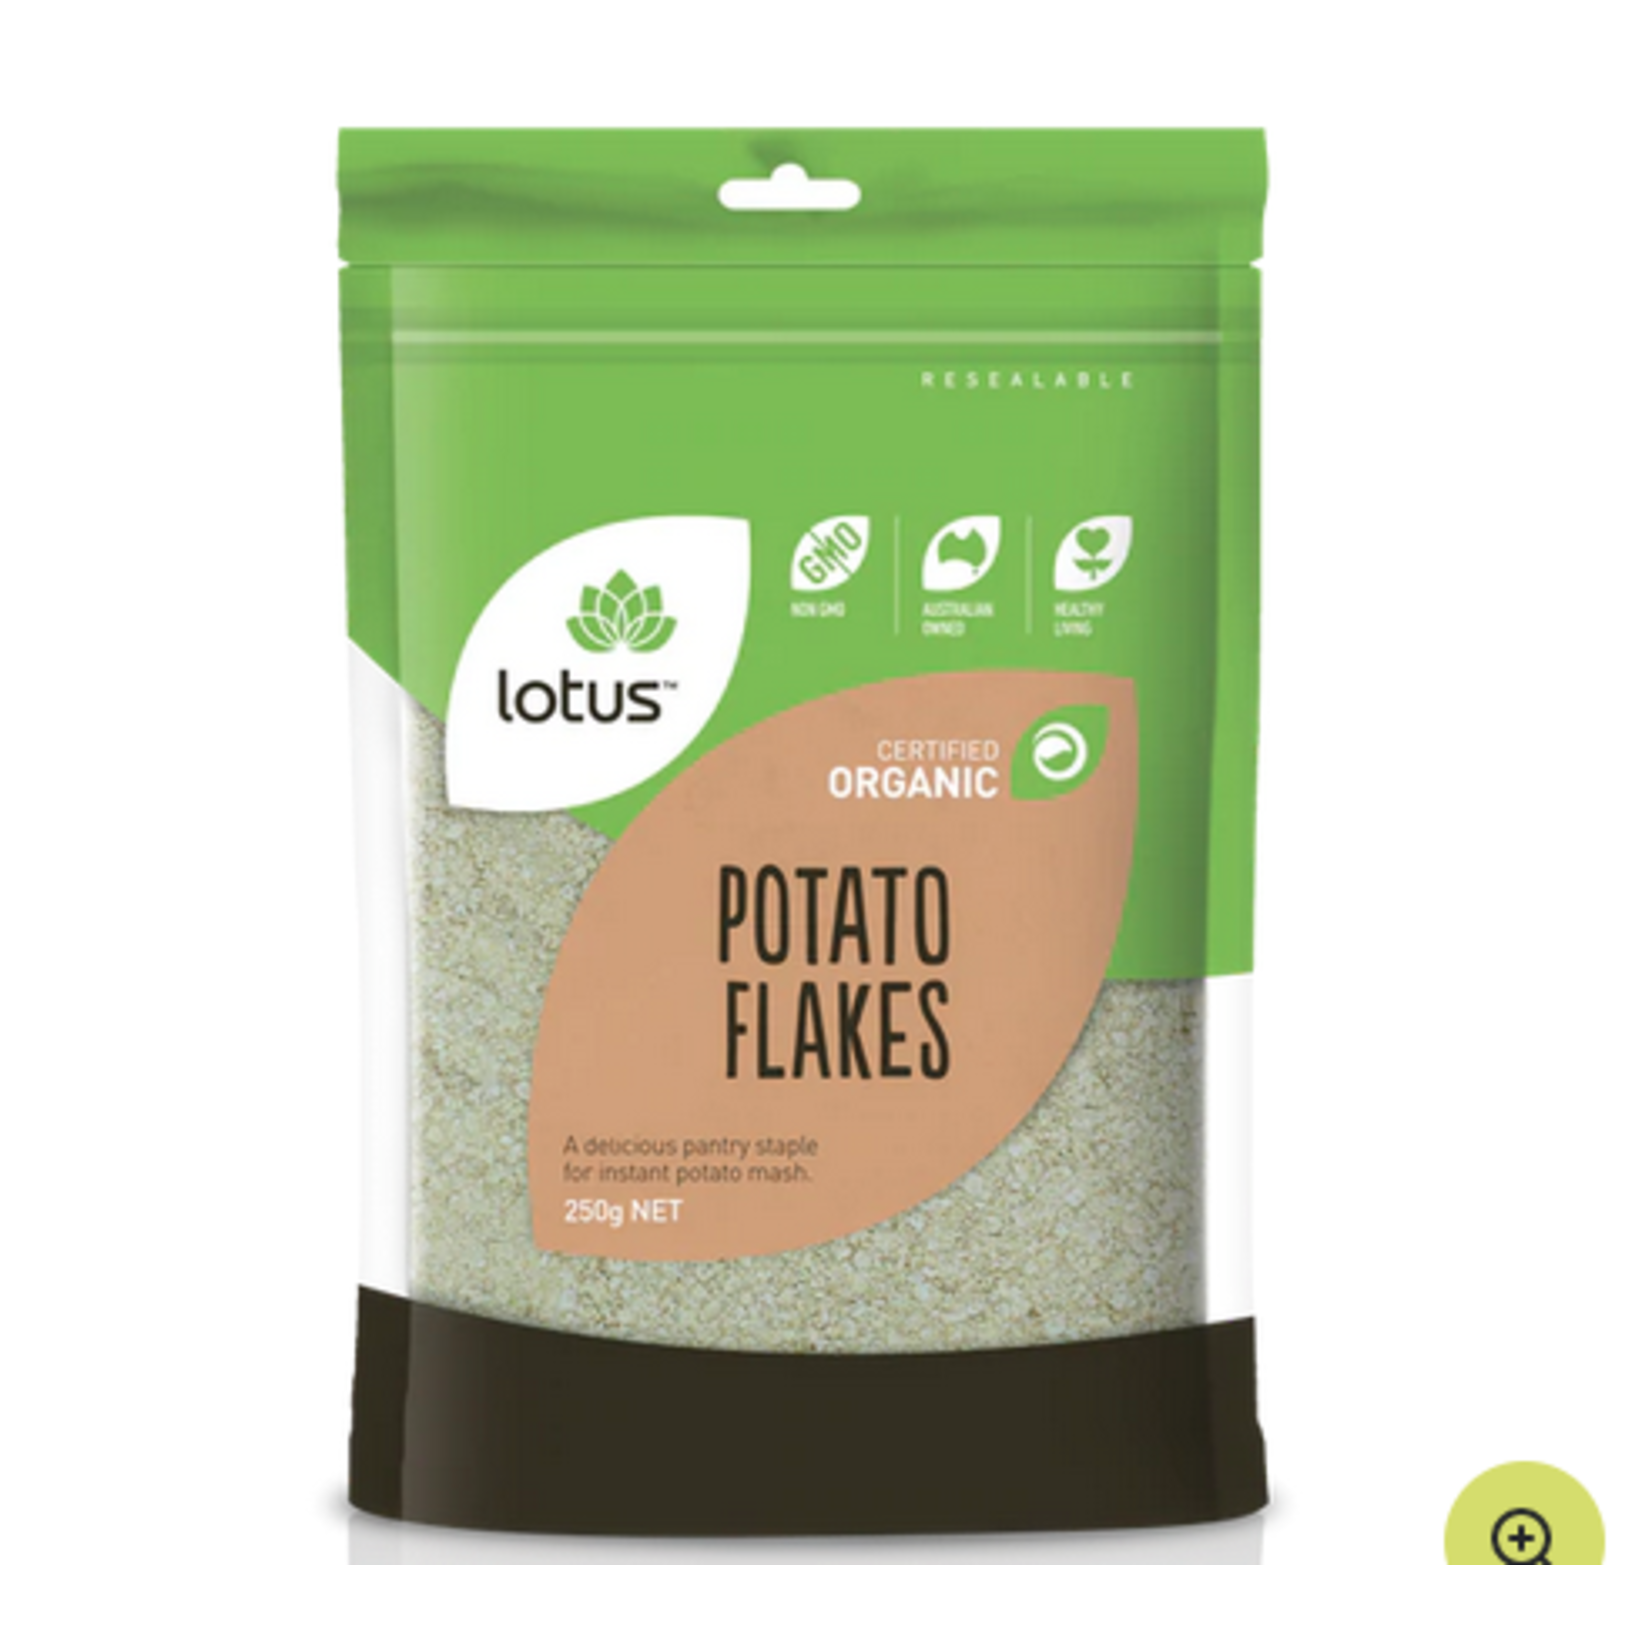 Lotus organic potato flakes 250g